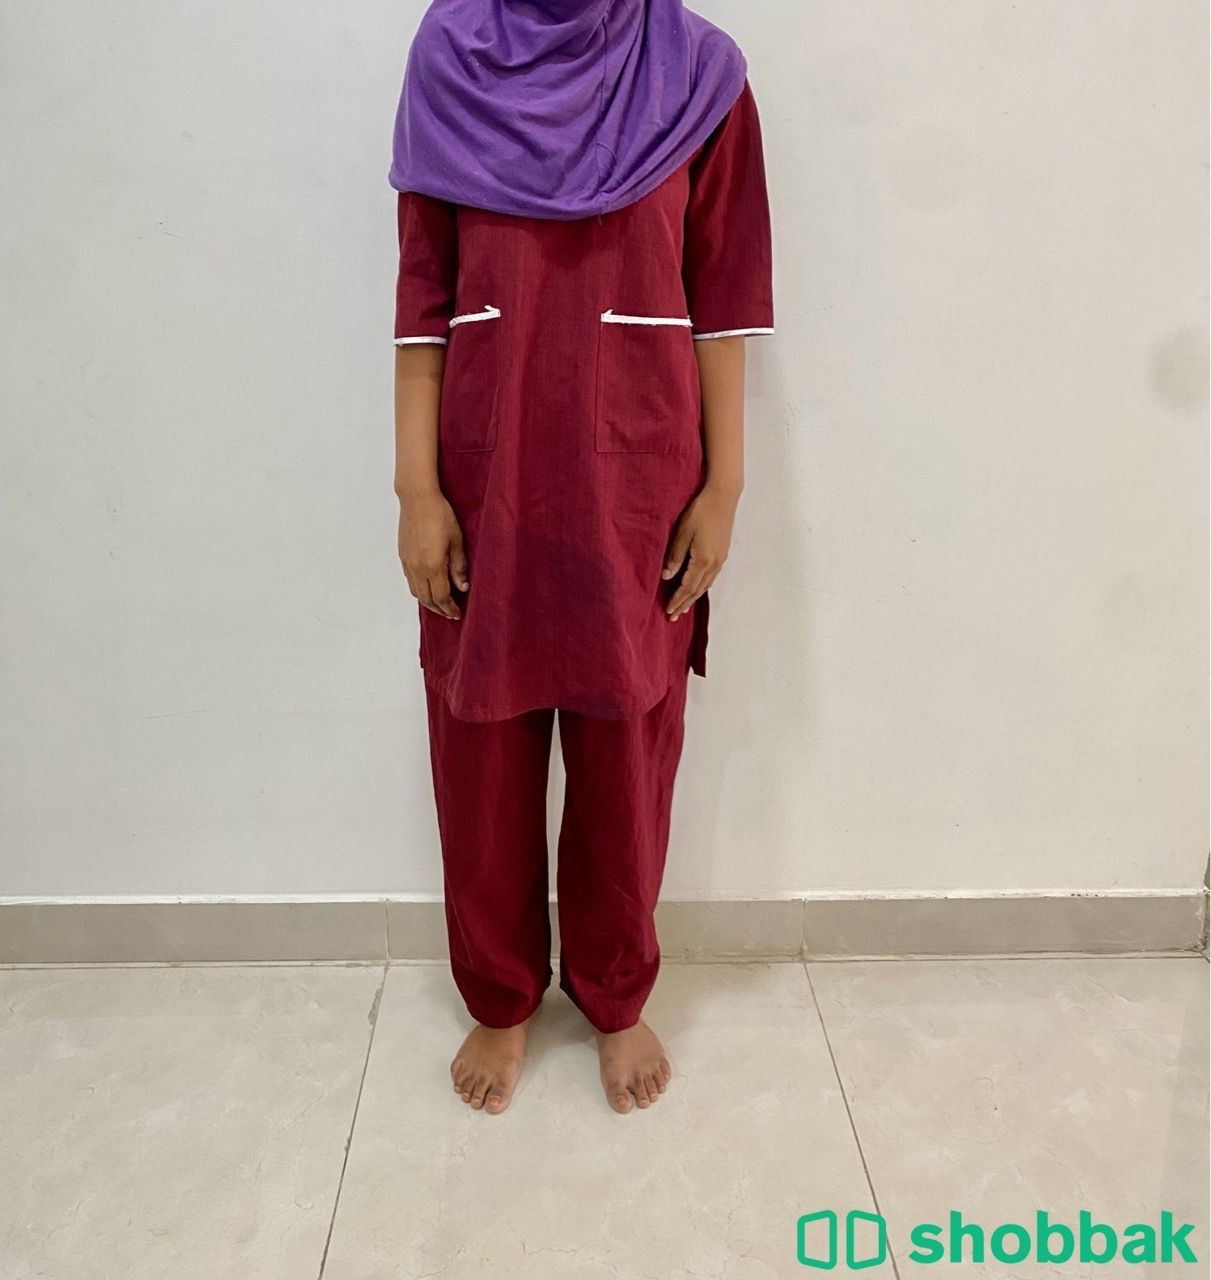 خادمة للتنازل  Shobbak Saudi Arabia